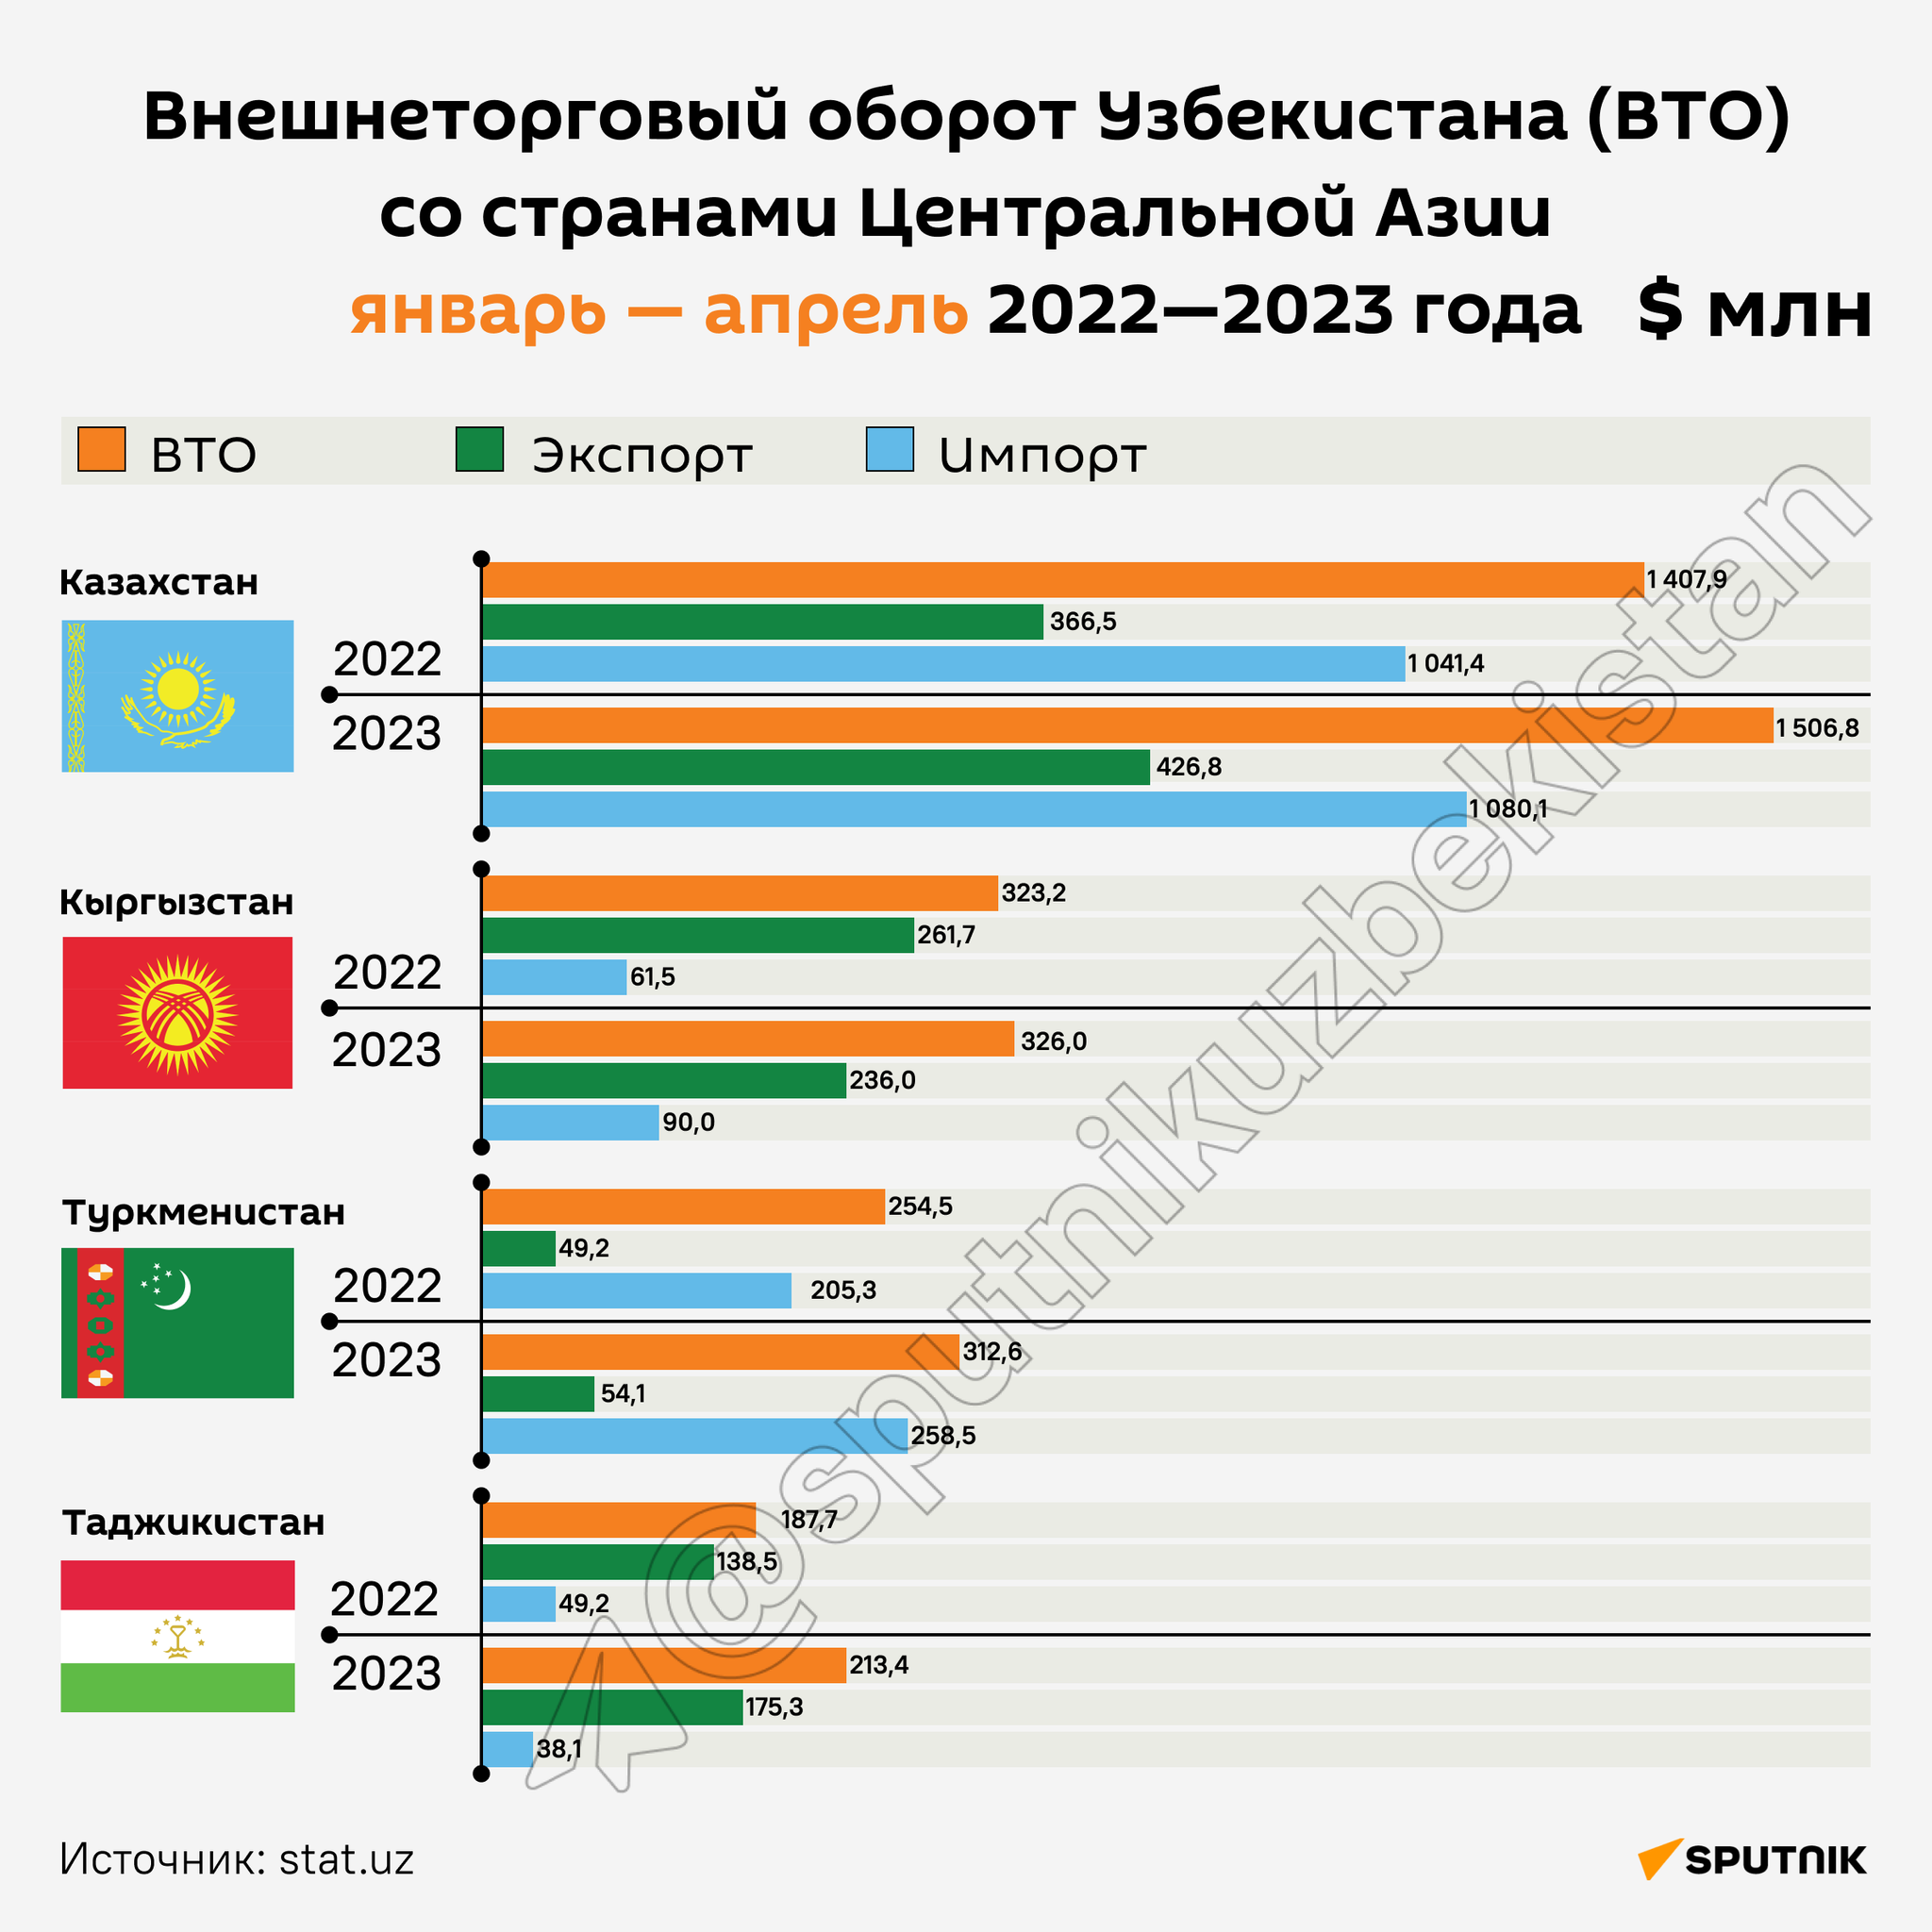 Внешнеторговый оборот Узбекистана (ВТО) со странами Центральной Азии за январь-апрель 2022-2023 года инфографика - Sputnik Узбекистан